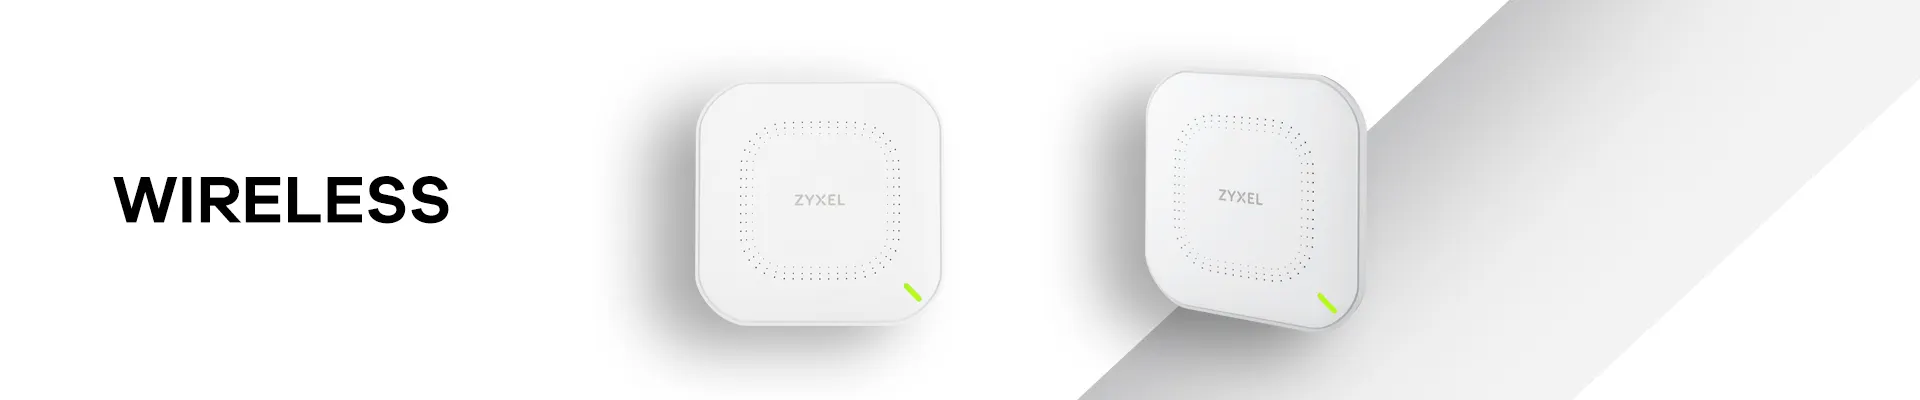 Zyxel Wireless